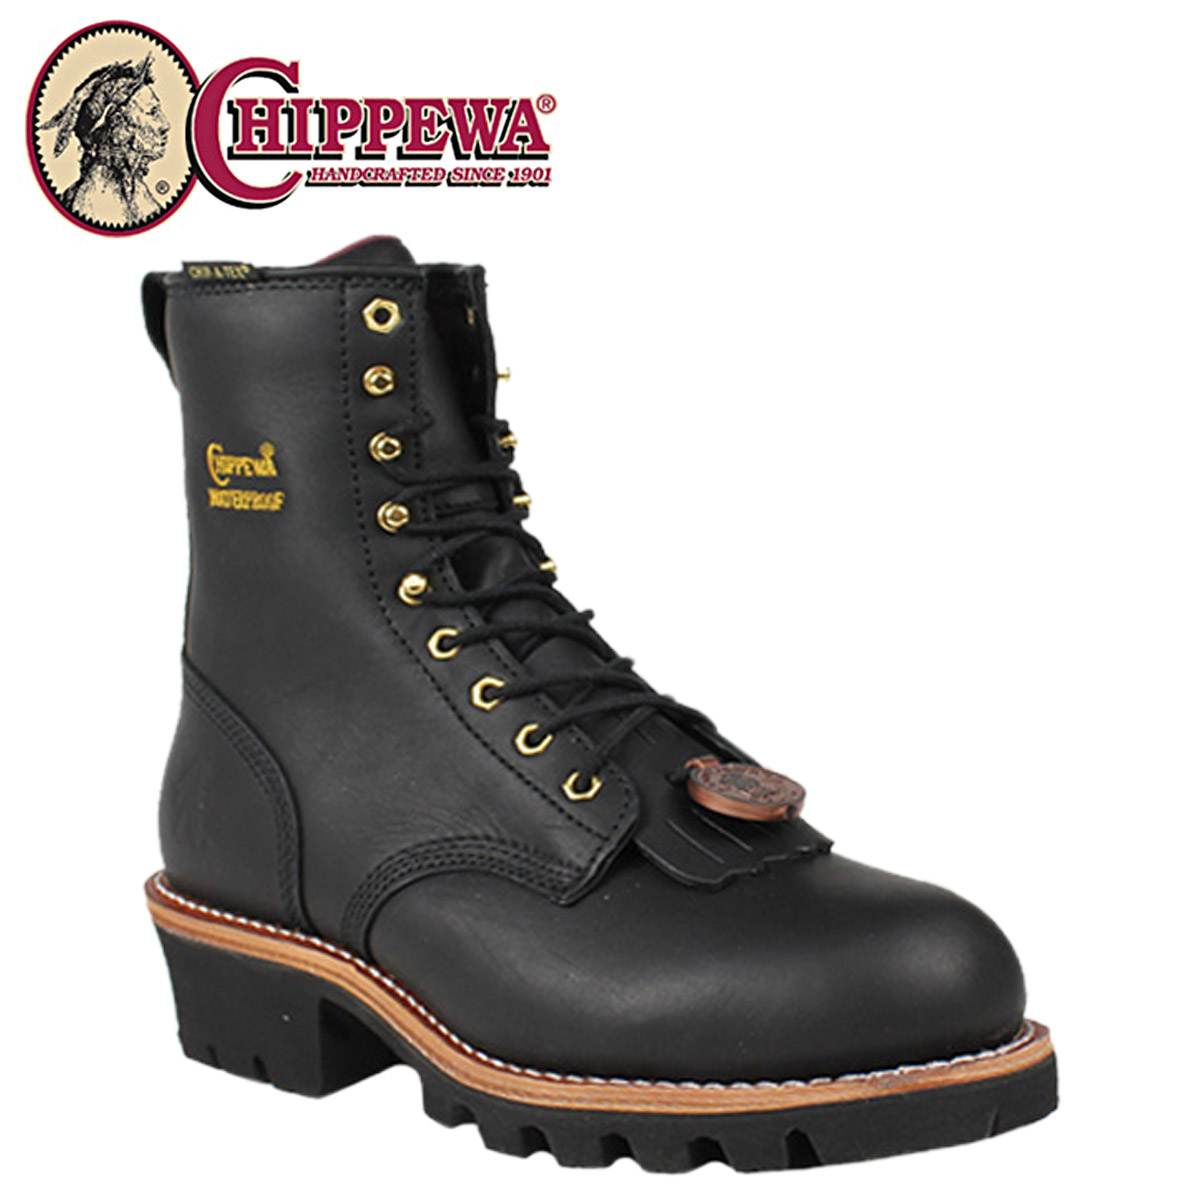 chippewa boots 73050